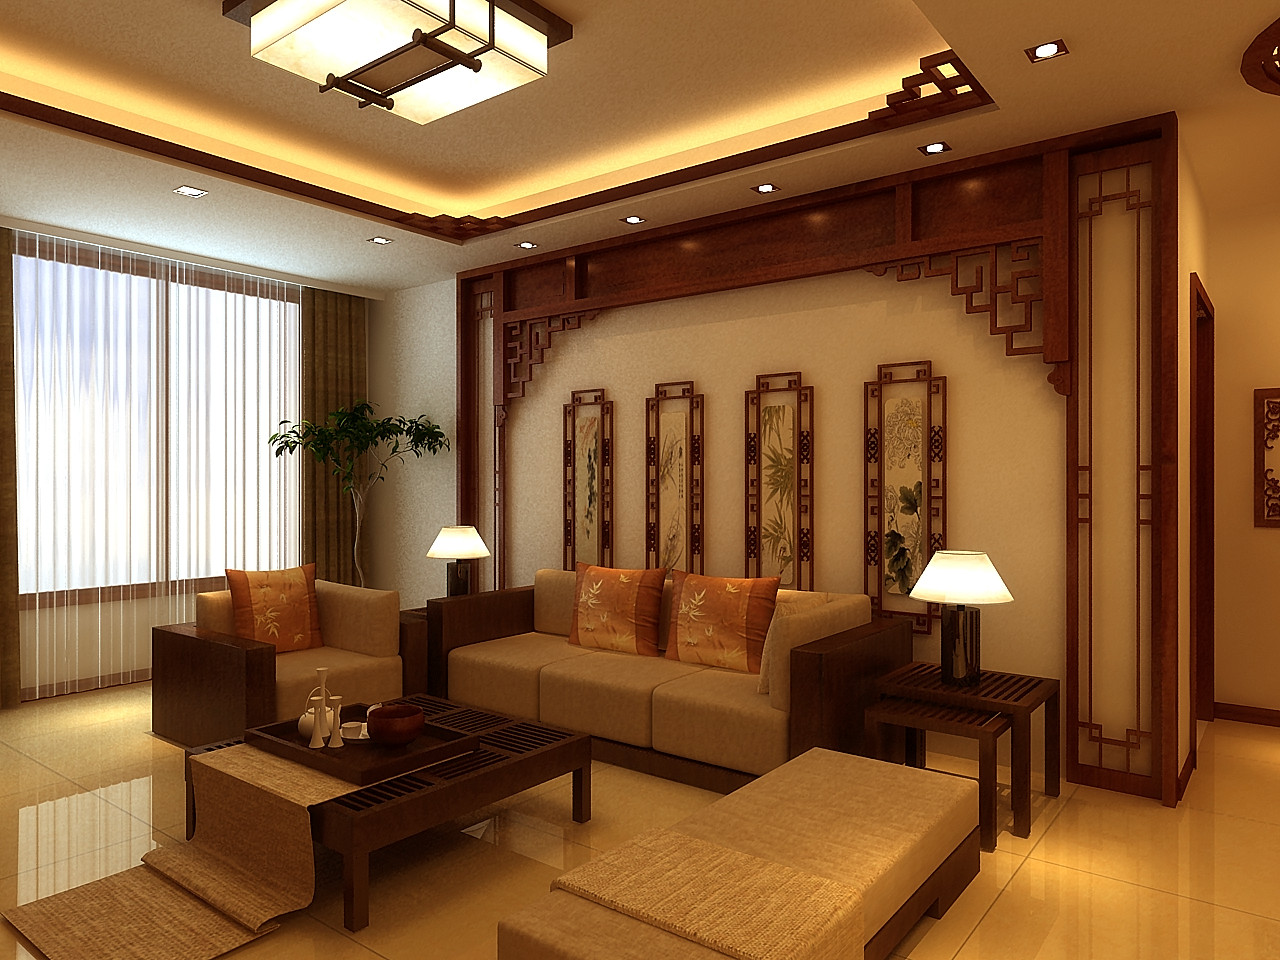 中式 稳重 平静 二居 经典 客厅图片来自天津京尚装饰在京尚装饰-北宁湾-中式两居98㎡的分享